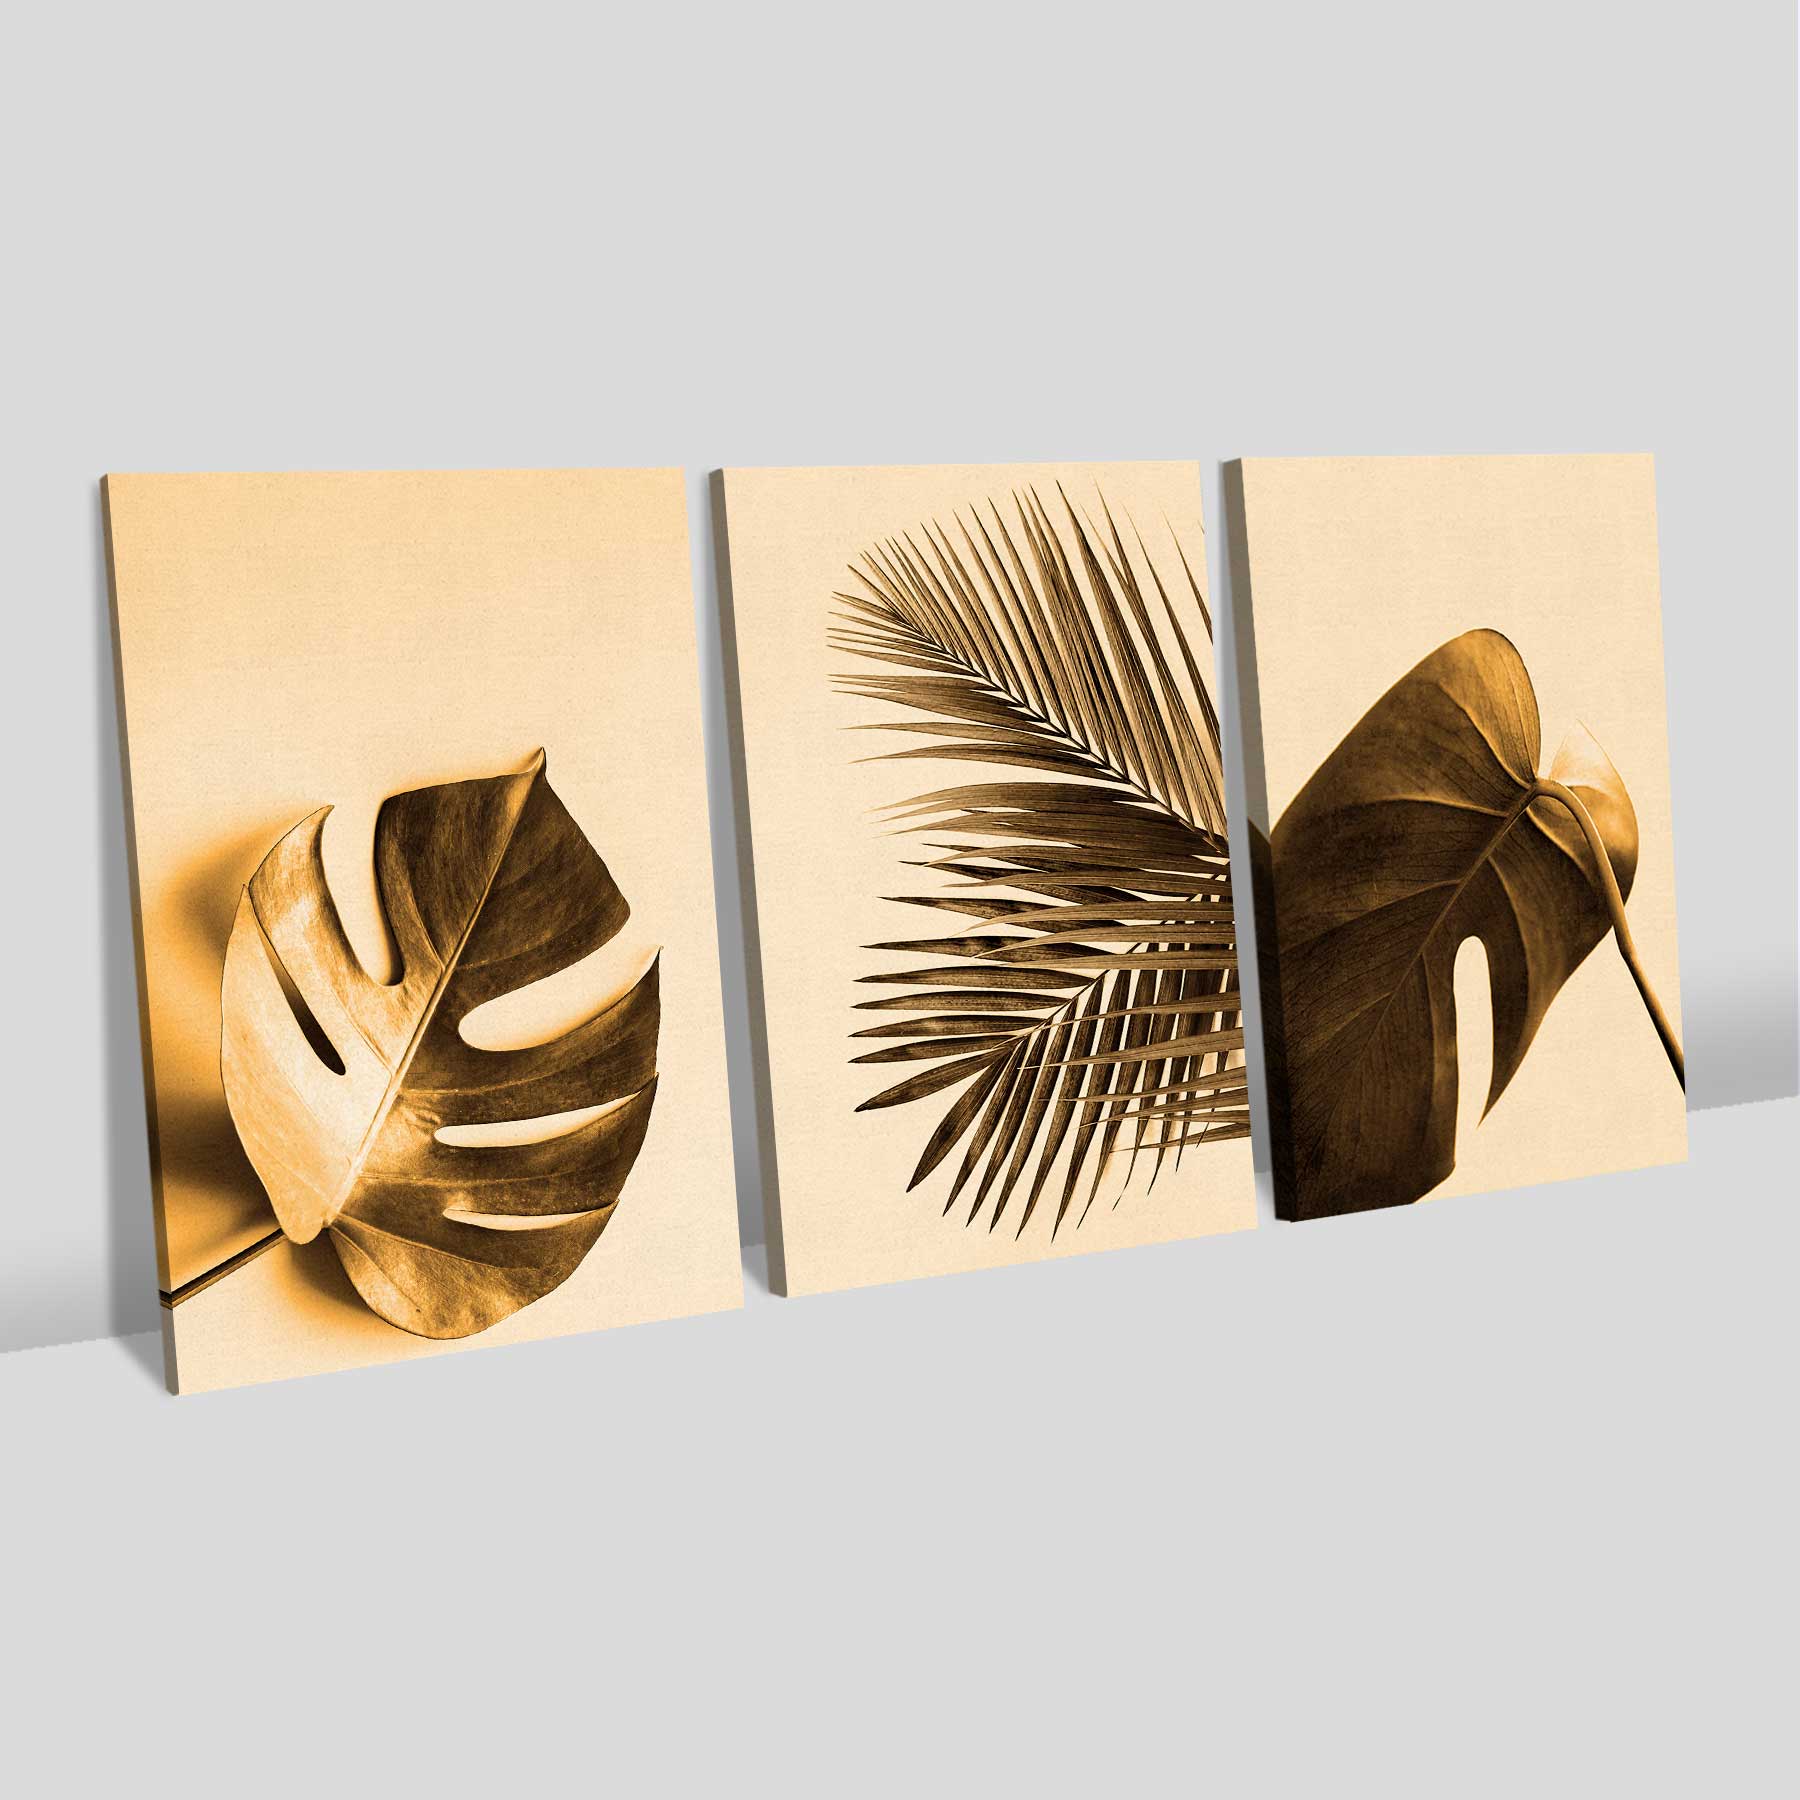 Kit 3 Quadros Retangulares - Trio de Folhas Douradas